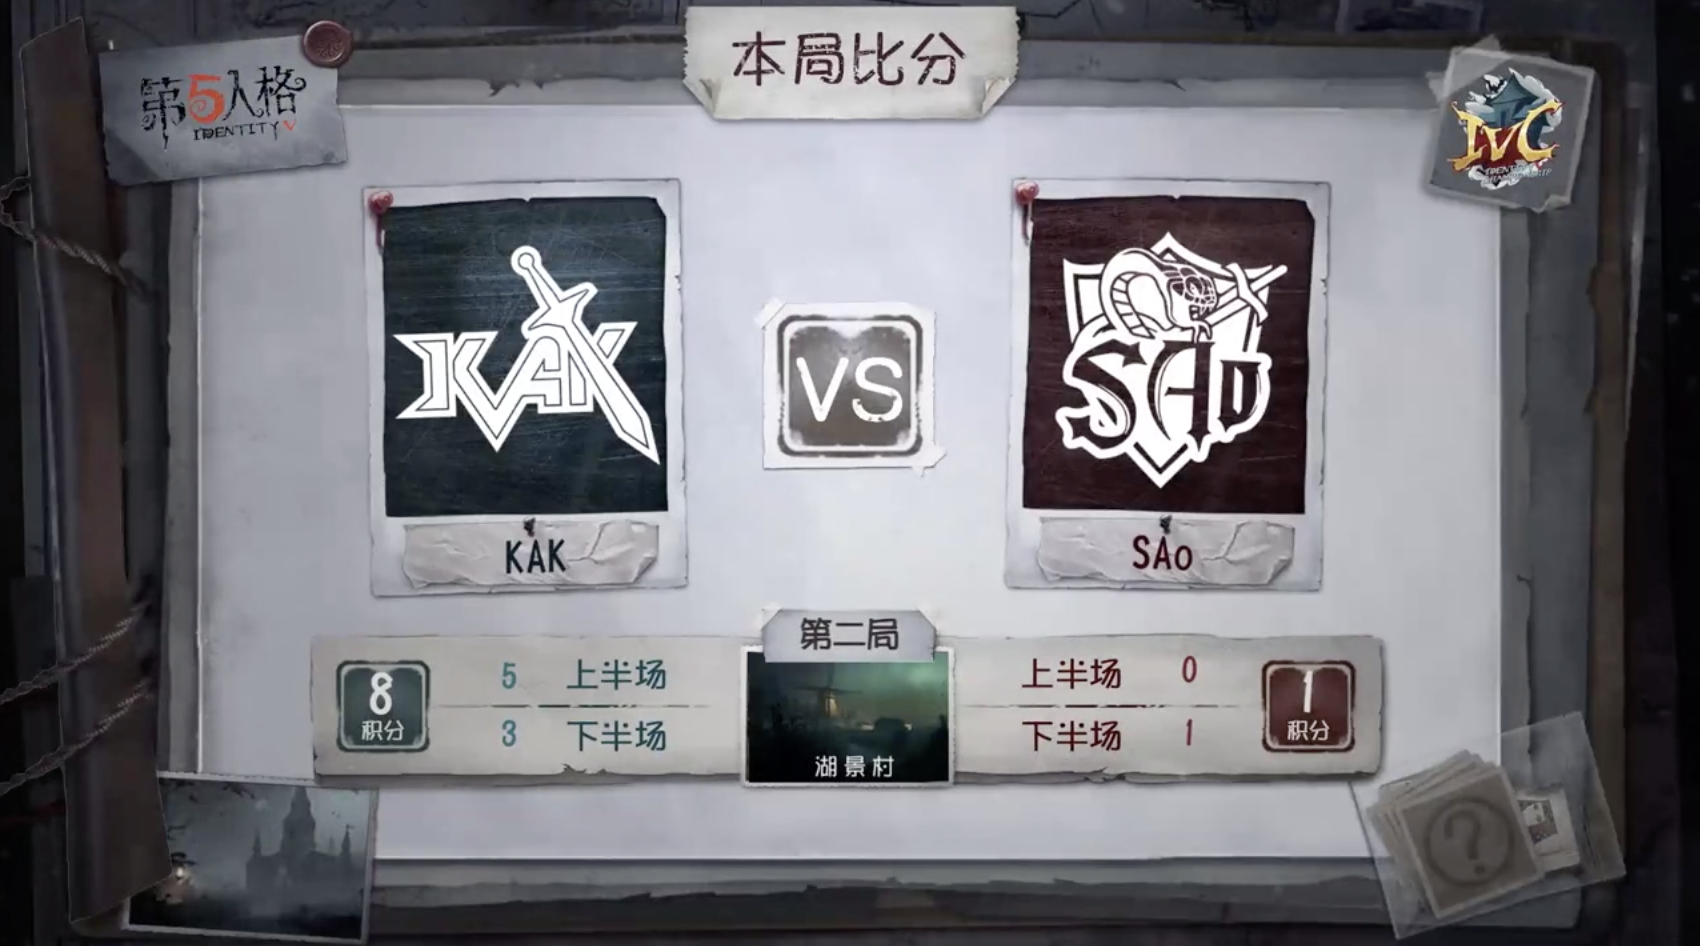 10月25日 KAK vs SAo小组赛BO3第二局